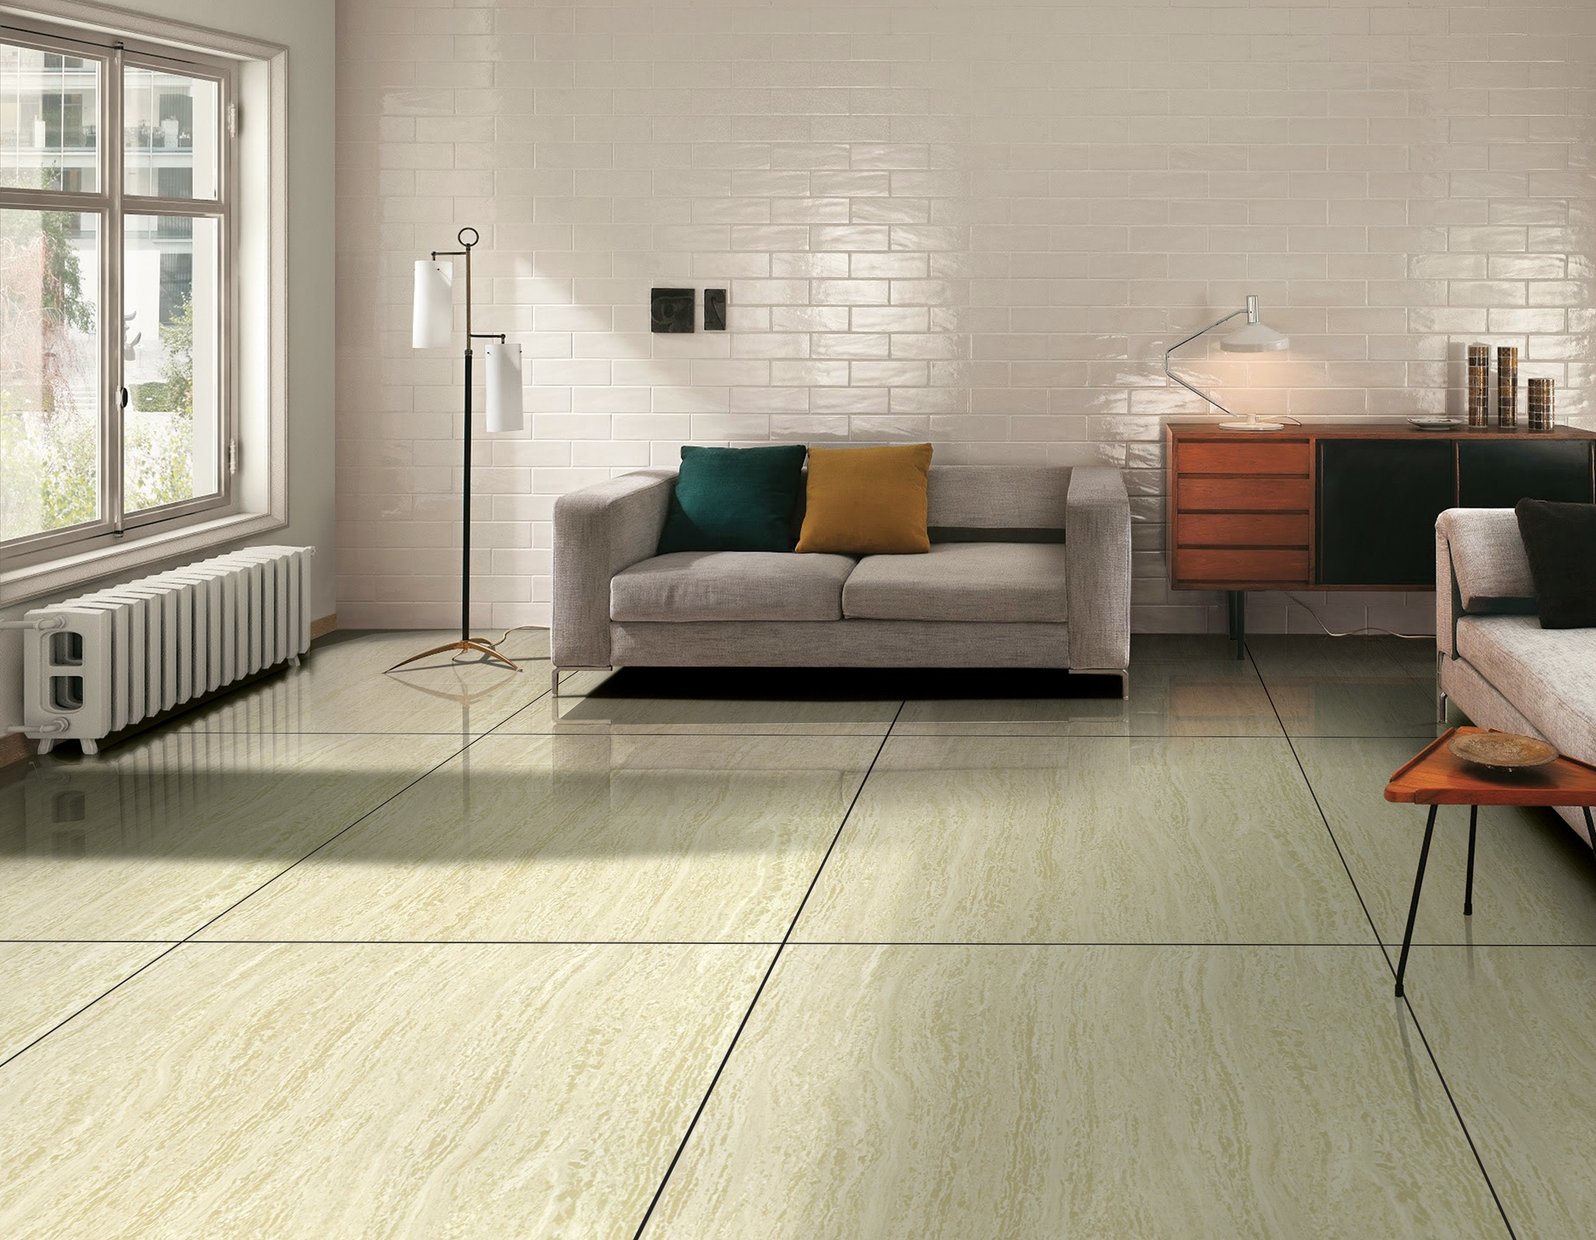 delta Green tiles Modern style Living room Tiles